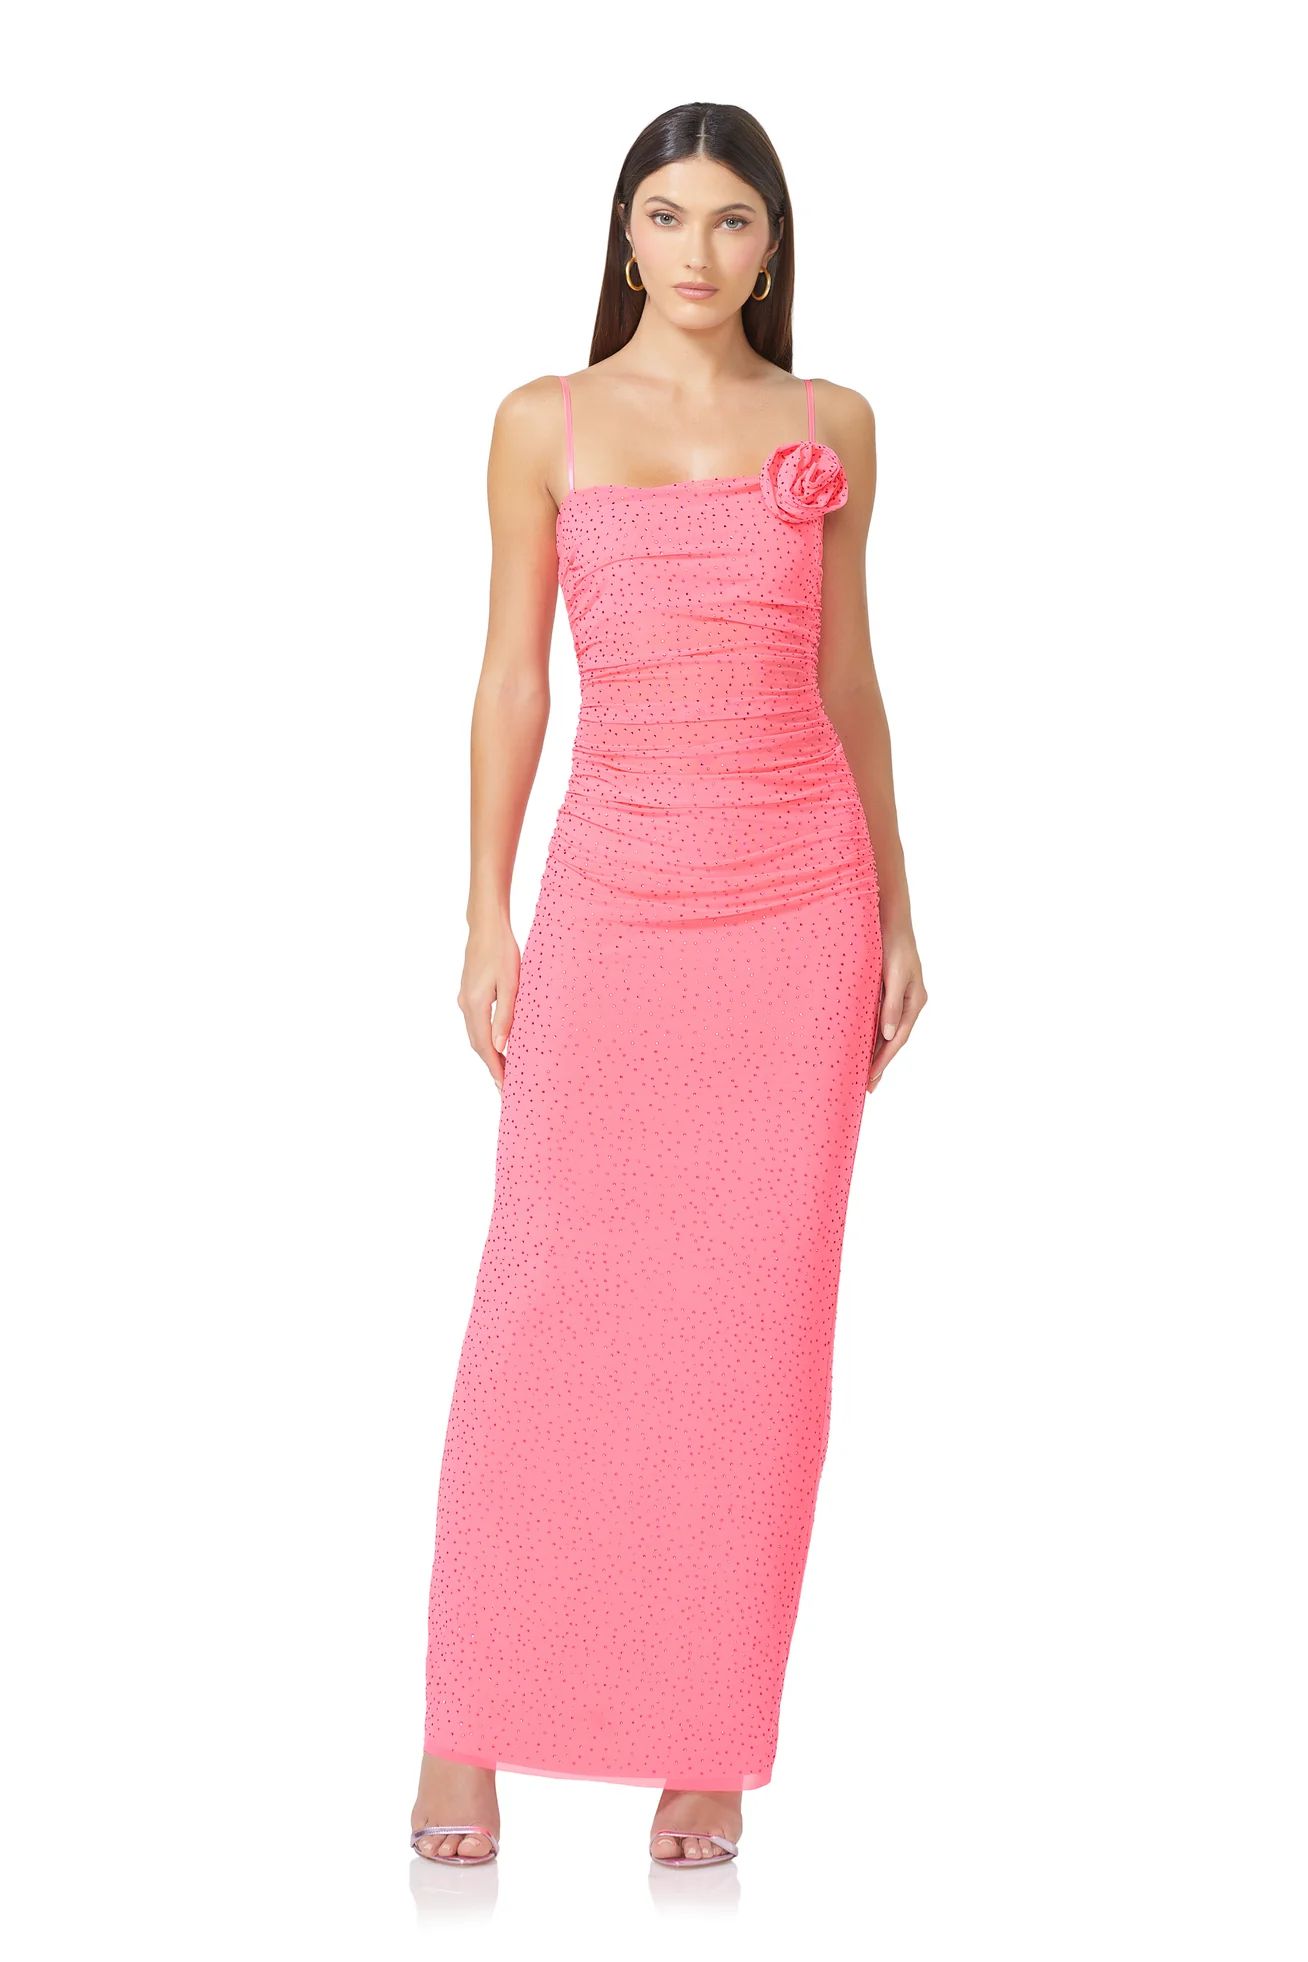 Jennan Rosette Rhinestone Dress - Knockout Pink | ShopAFRM